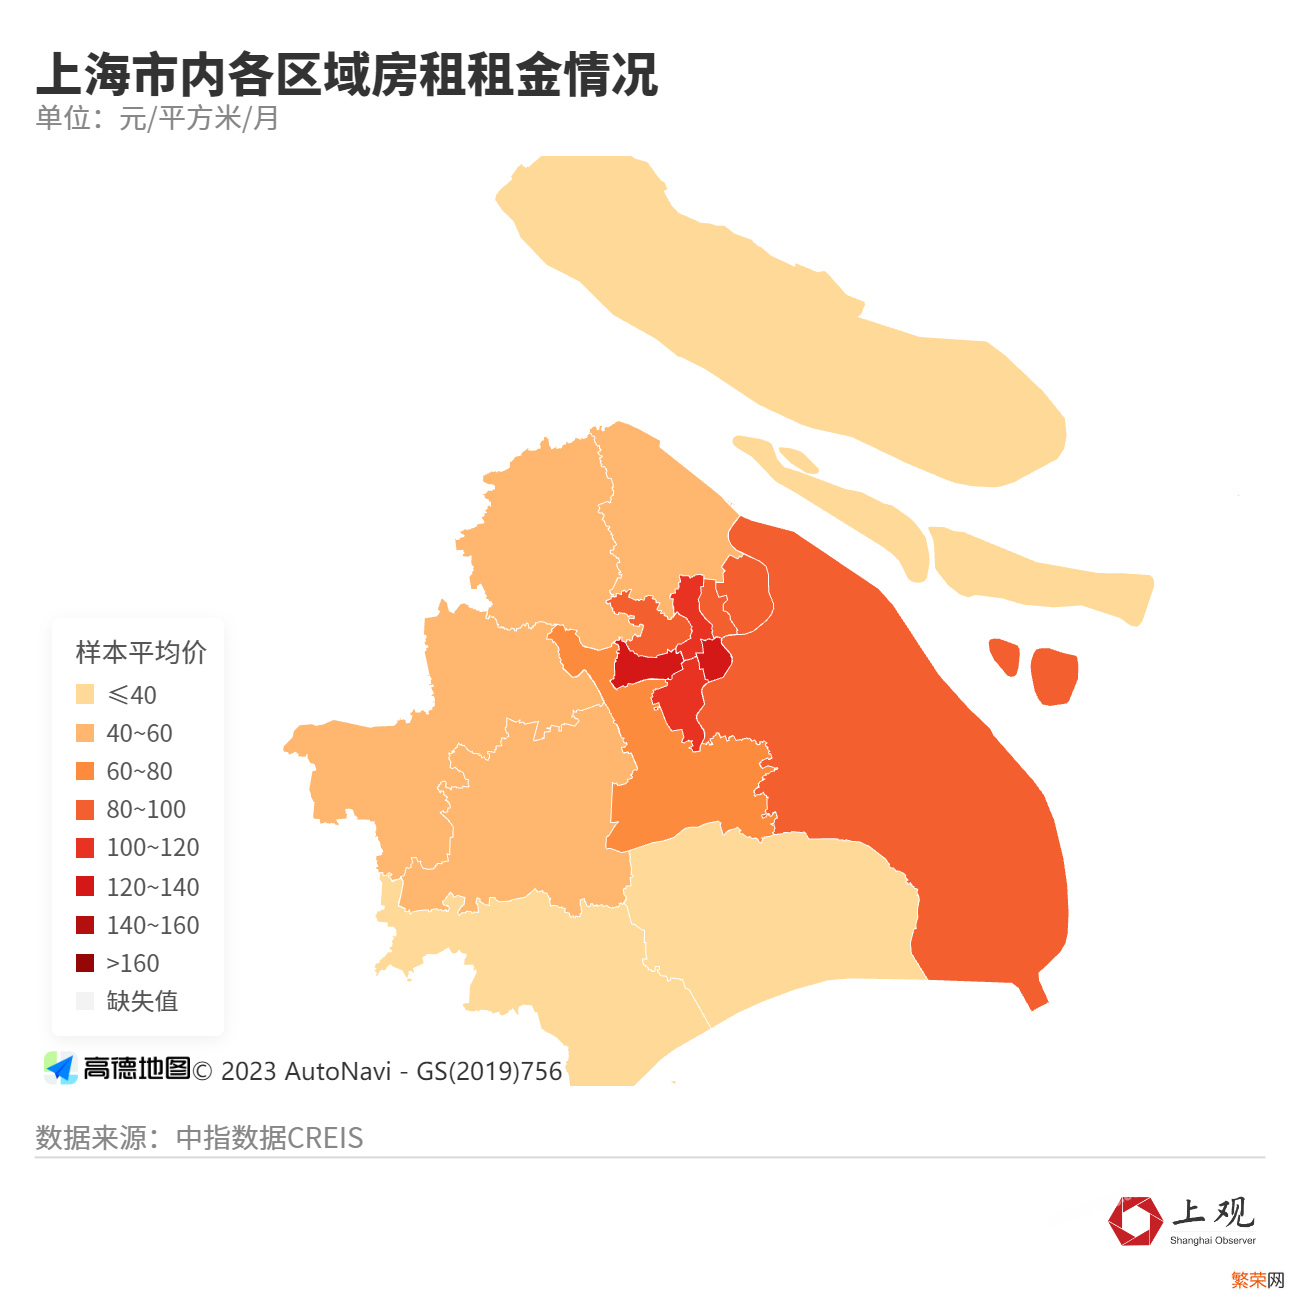 上海的租房市场解析 上海房租最近是涨还是跌